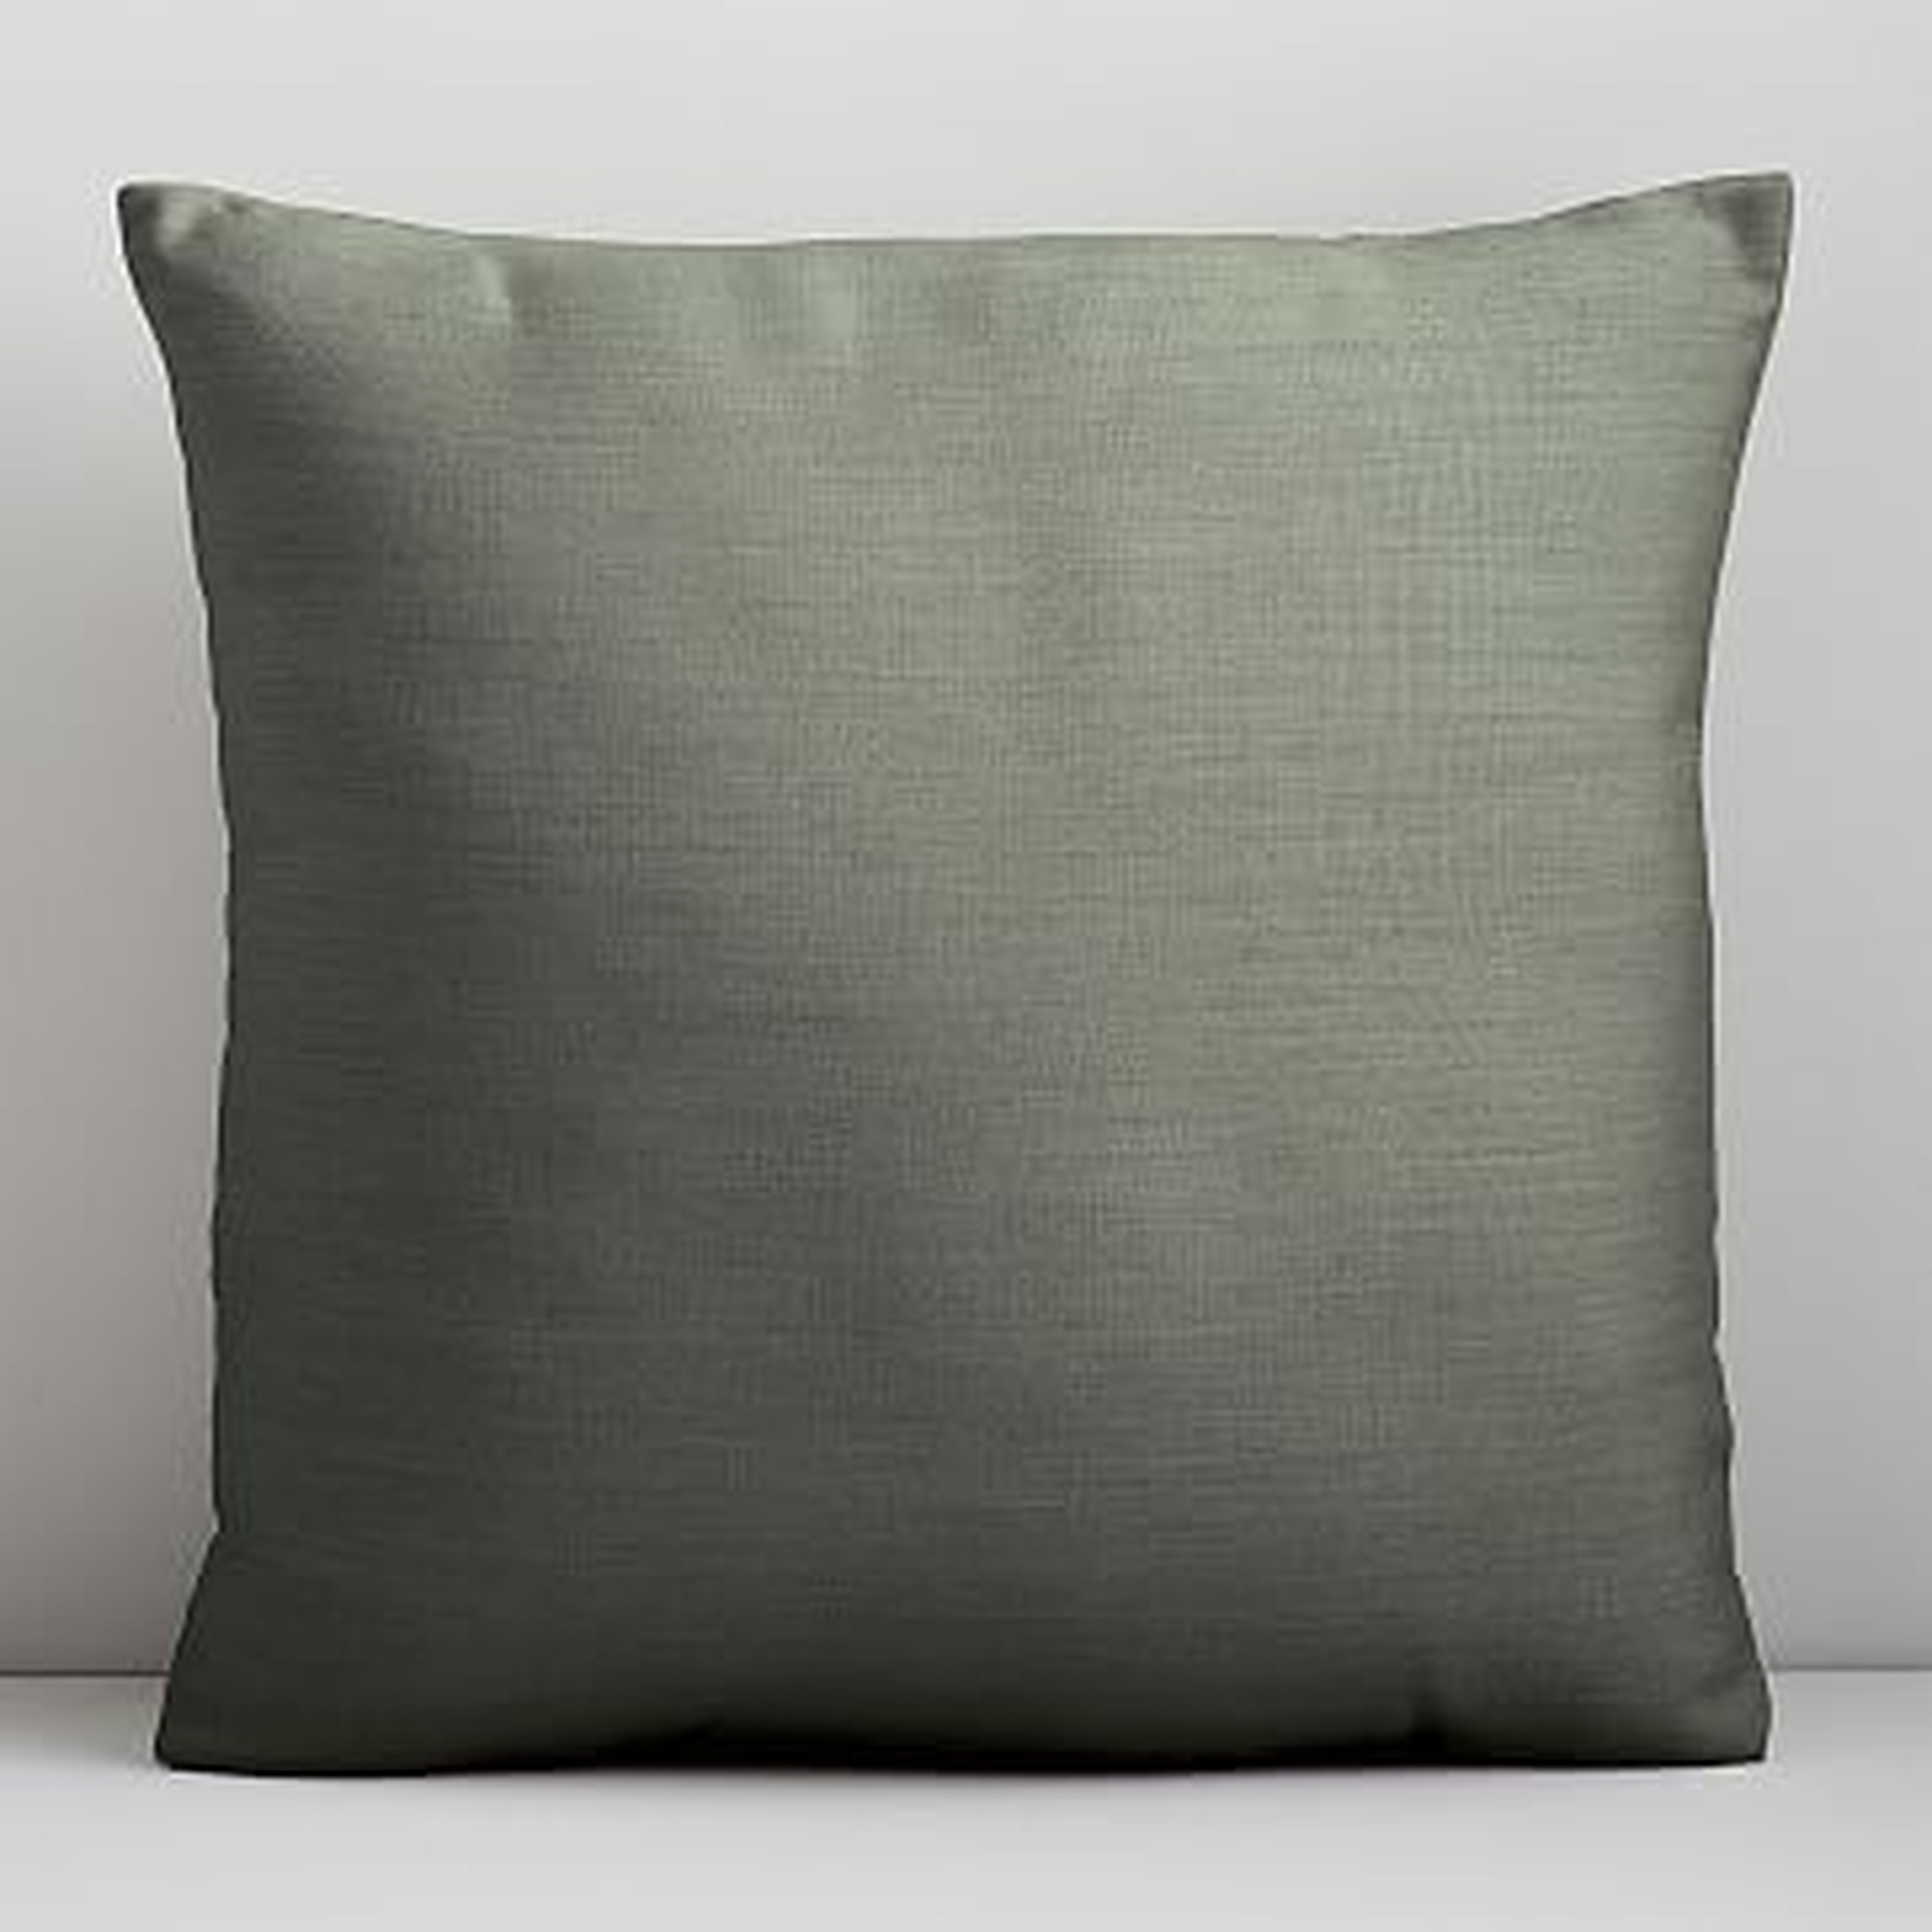 Sunbrella Indoor/Outdoor Cast Pillow, Set of 2, 20"x20", Sage - West Elm